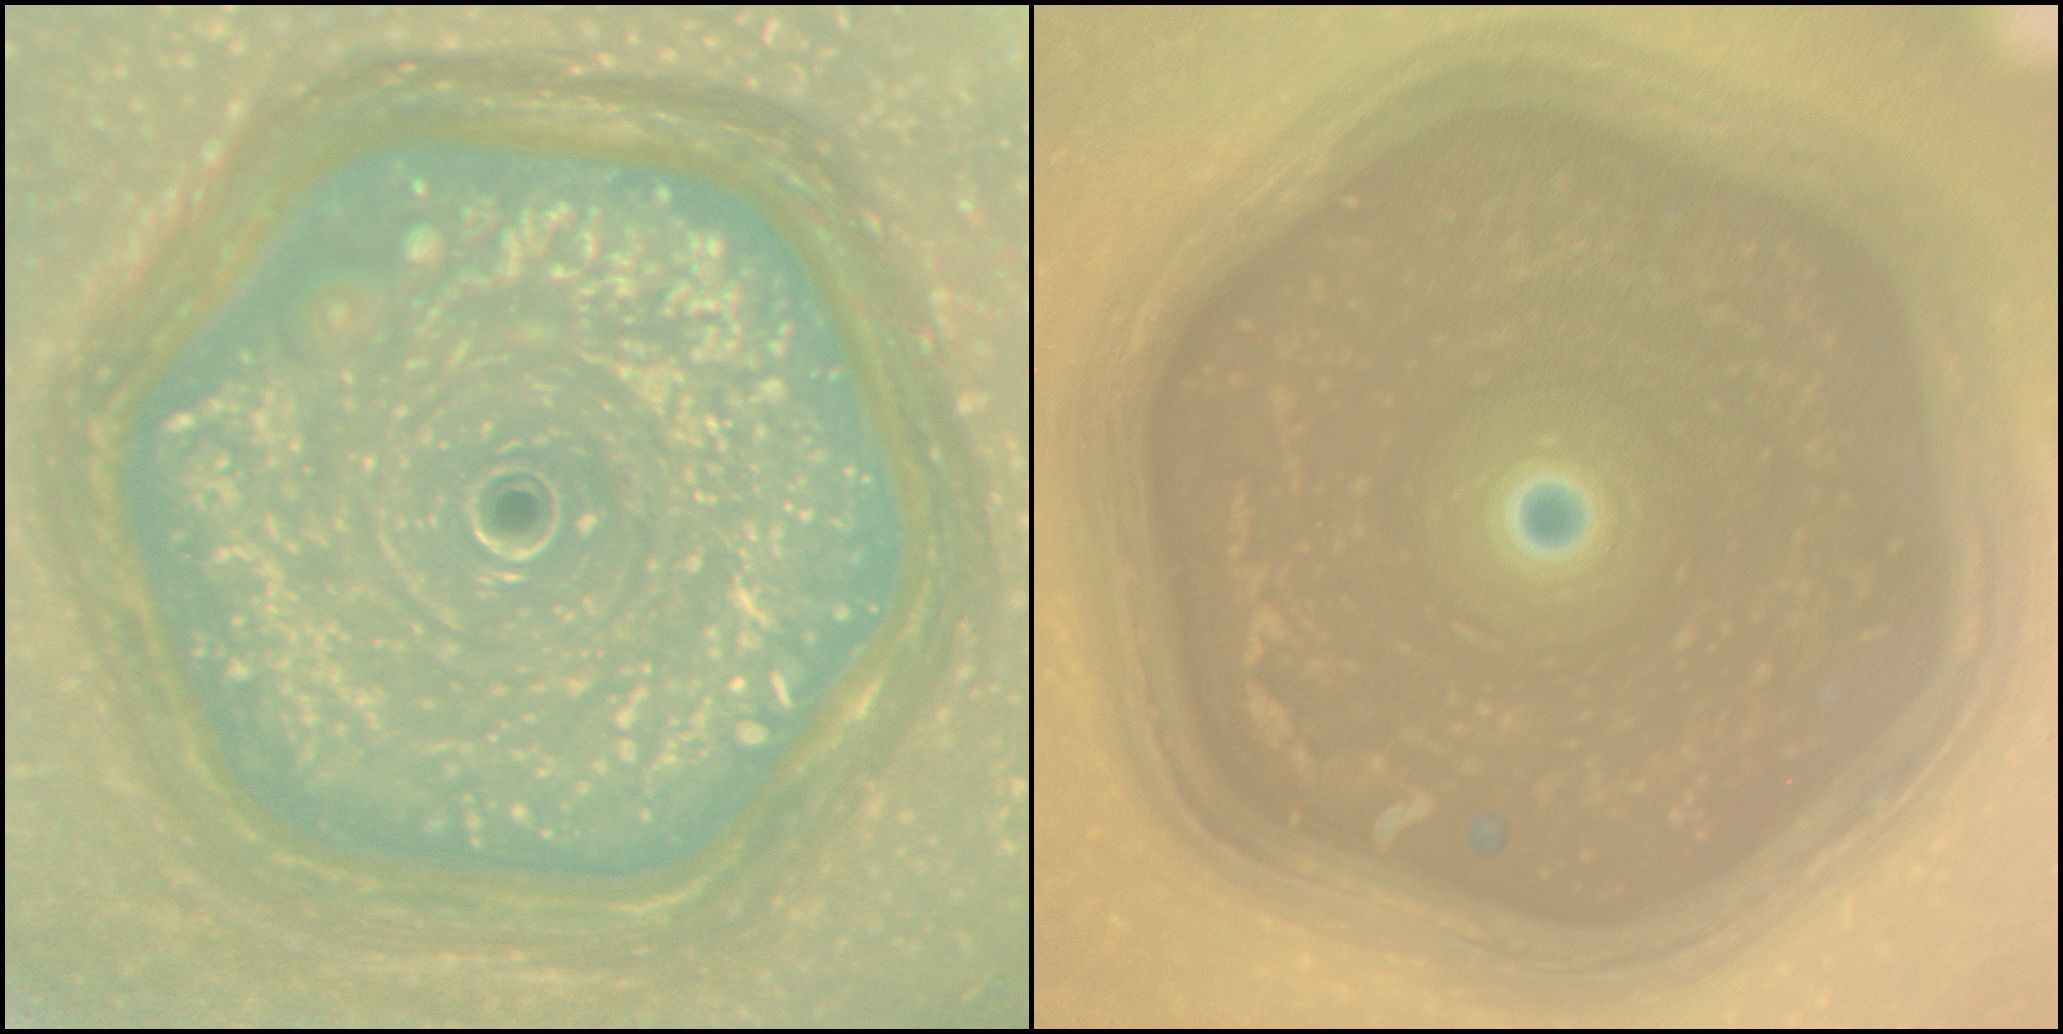 Two views of Saturn's northern hemisphere.